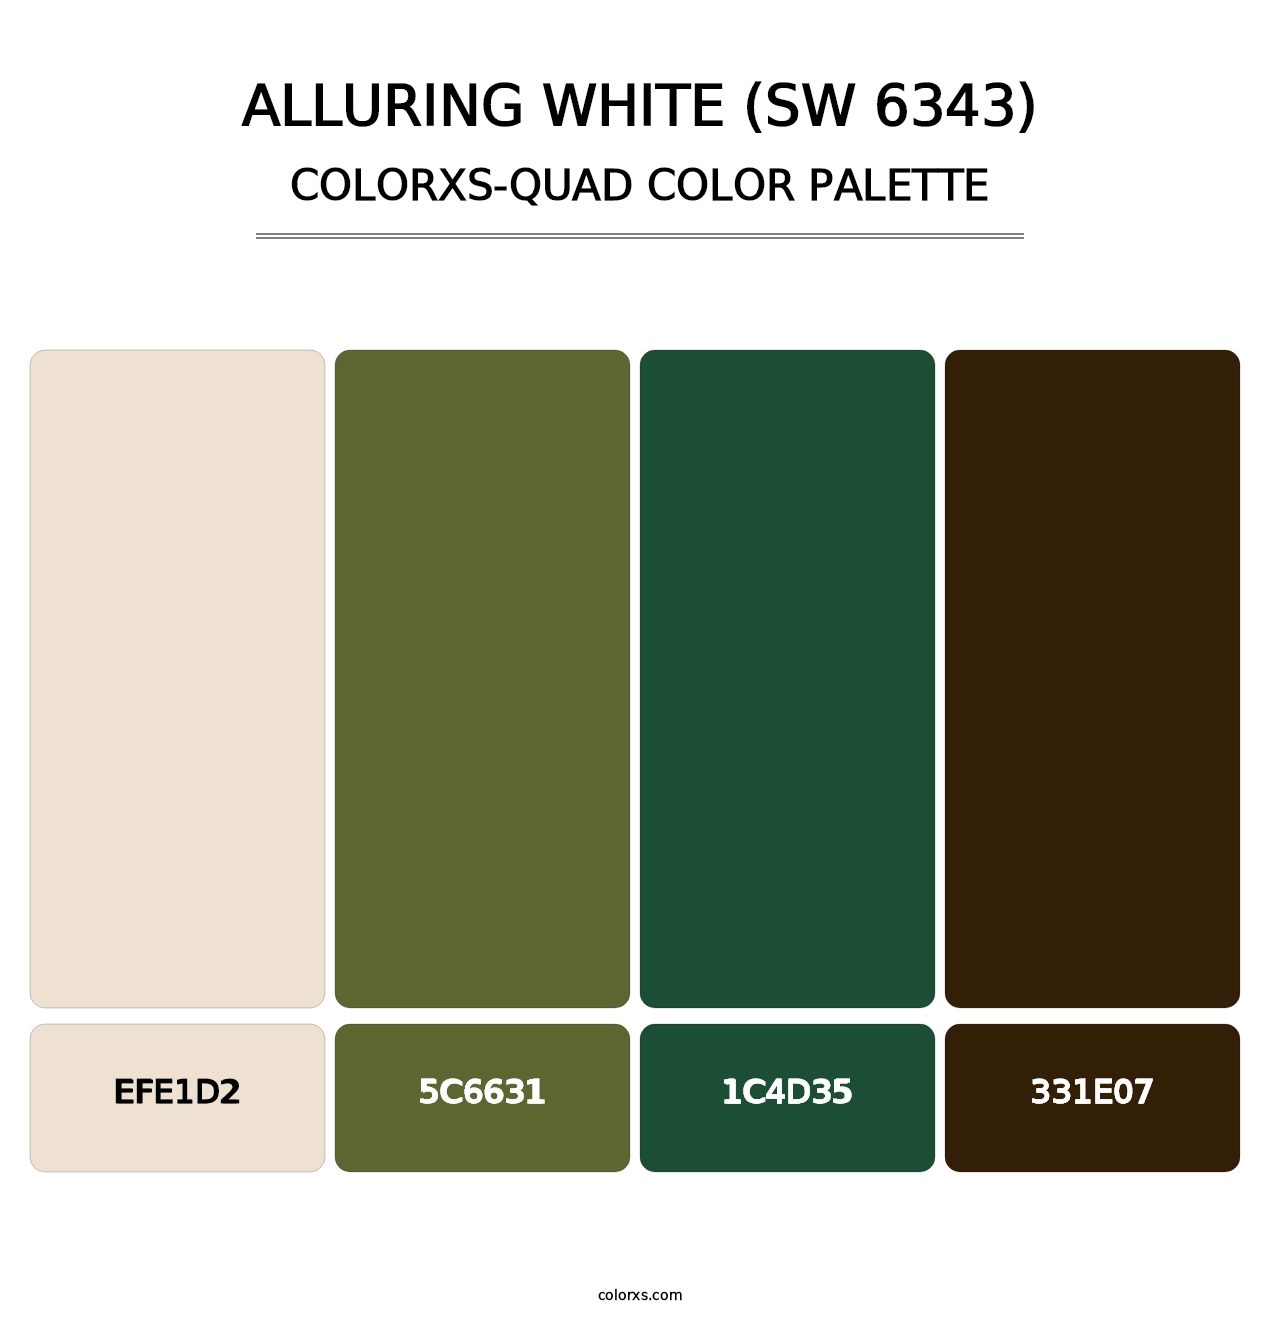 Alluring White (SW 6343) - Colorxs Quad Palette